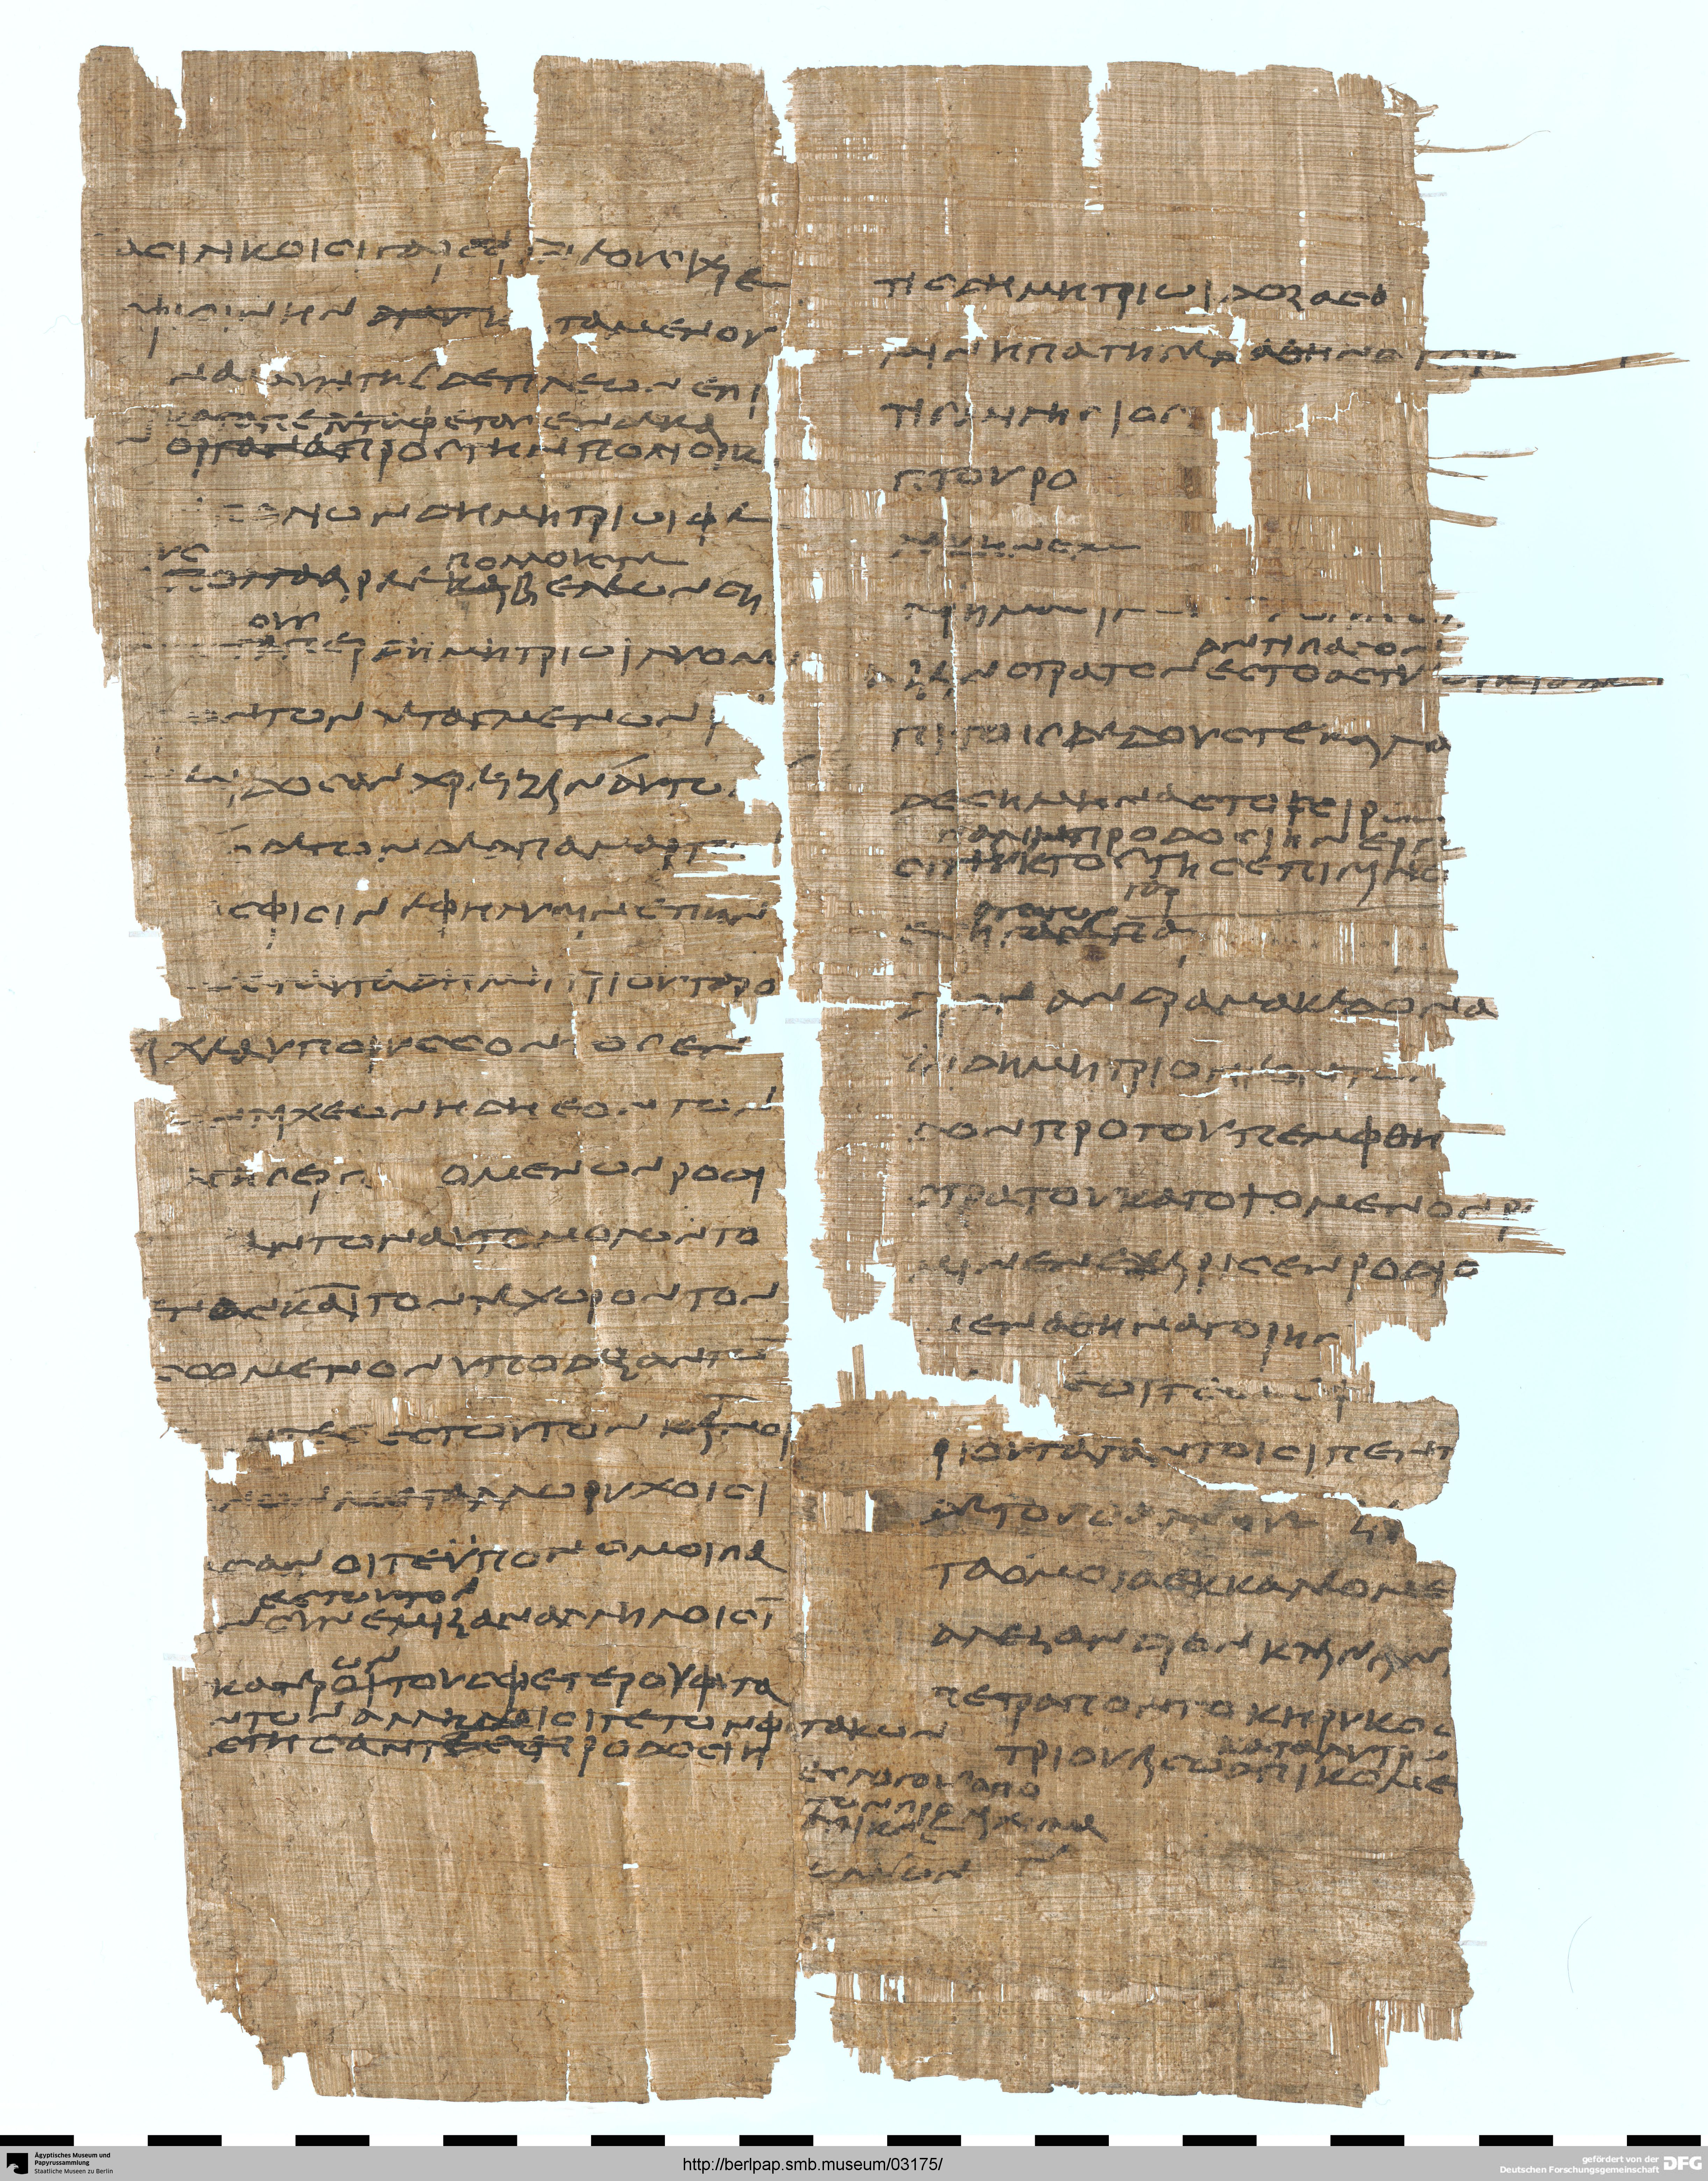 http://berlpap.smb.museum/Original/P_11632_R_001.jpg (Ägyptisches Museum und Papyrussammlung, Staatliche Museen zu Berlin CC BY-NC-SA)